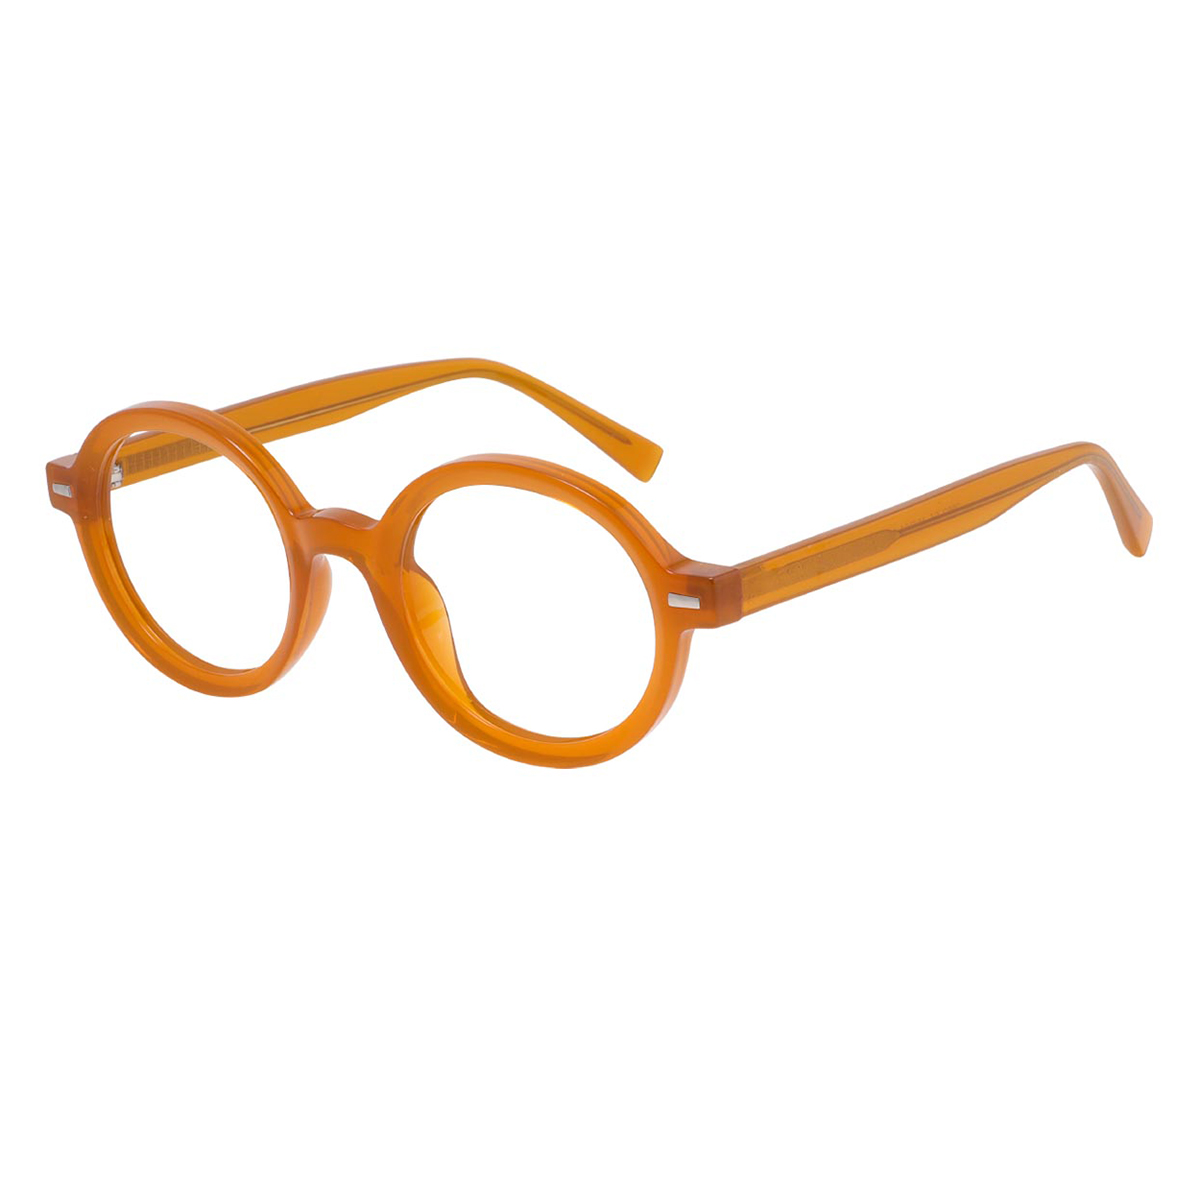 Ashplant - Round Orange Reading Glasses for Men & Women